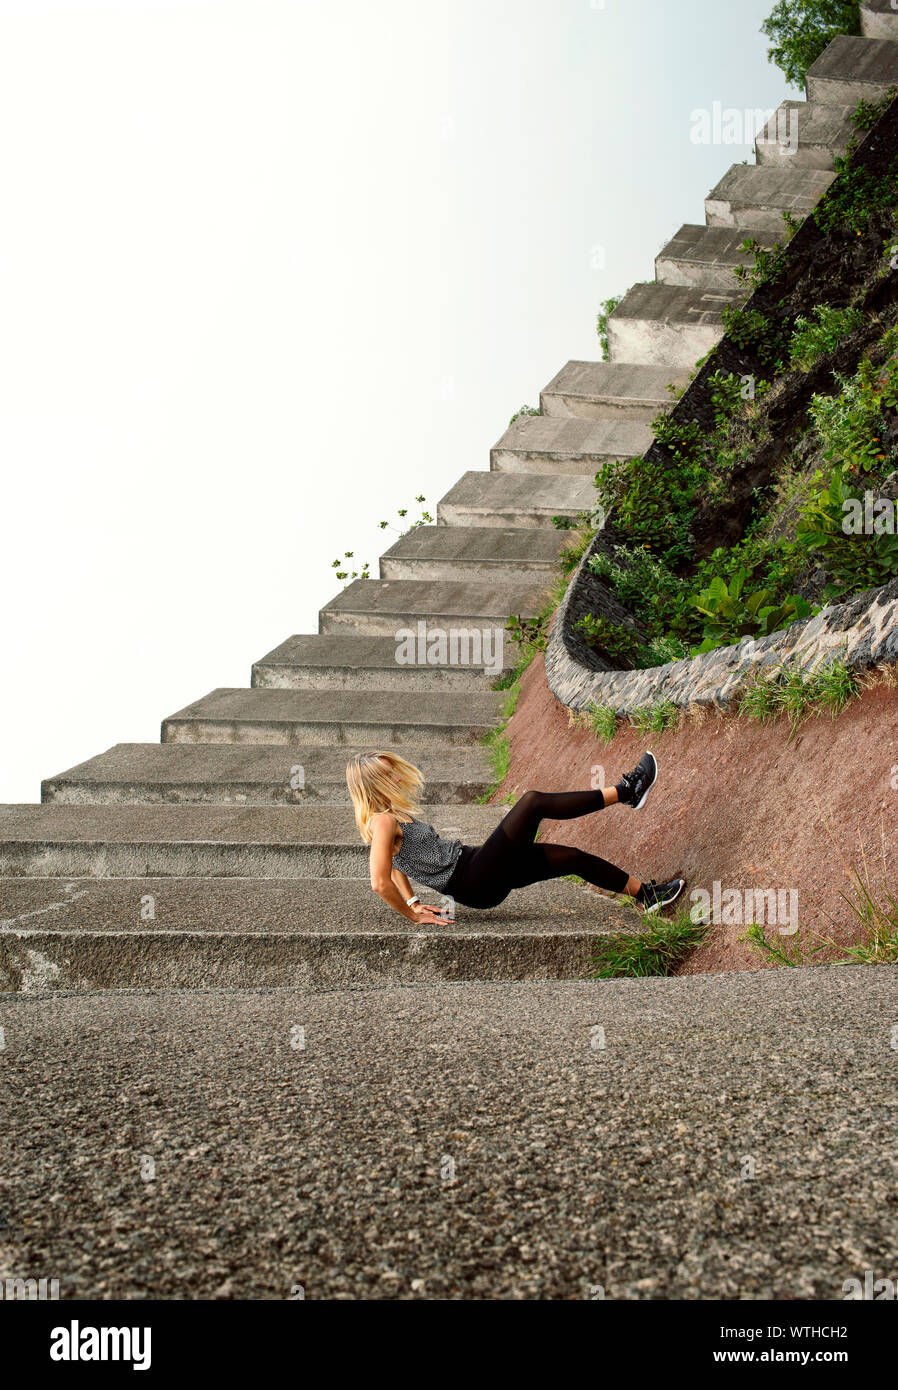 Frau scheint wie ein Sturz auf Beton Boden. Optische Illusion mit gezwungen Perspektive Technik. Espacio Escultórico, UNAM, Mexiko City, Mexiko. Stockfoto